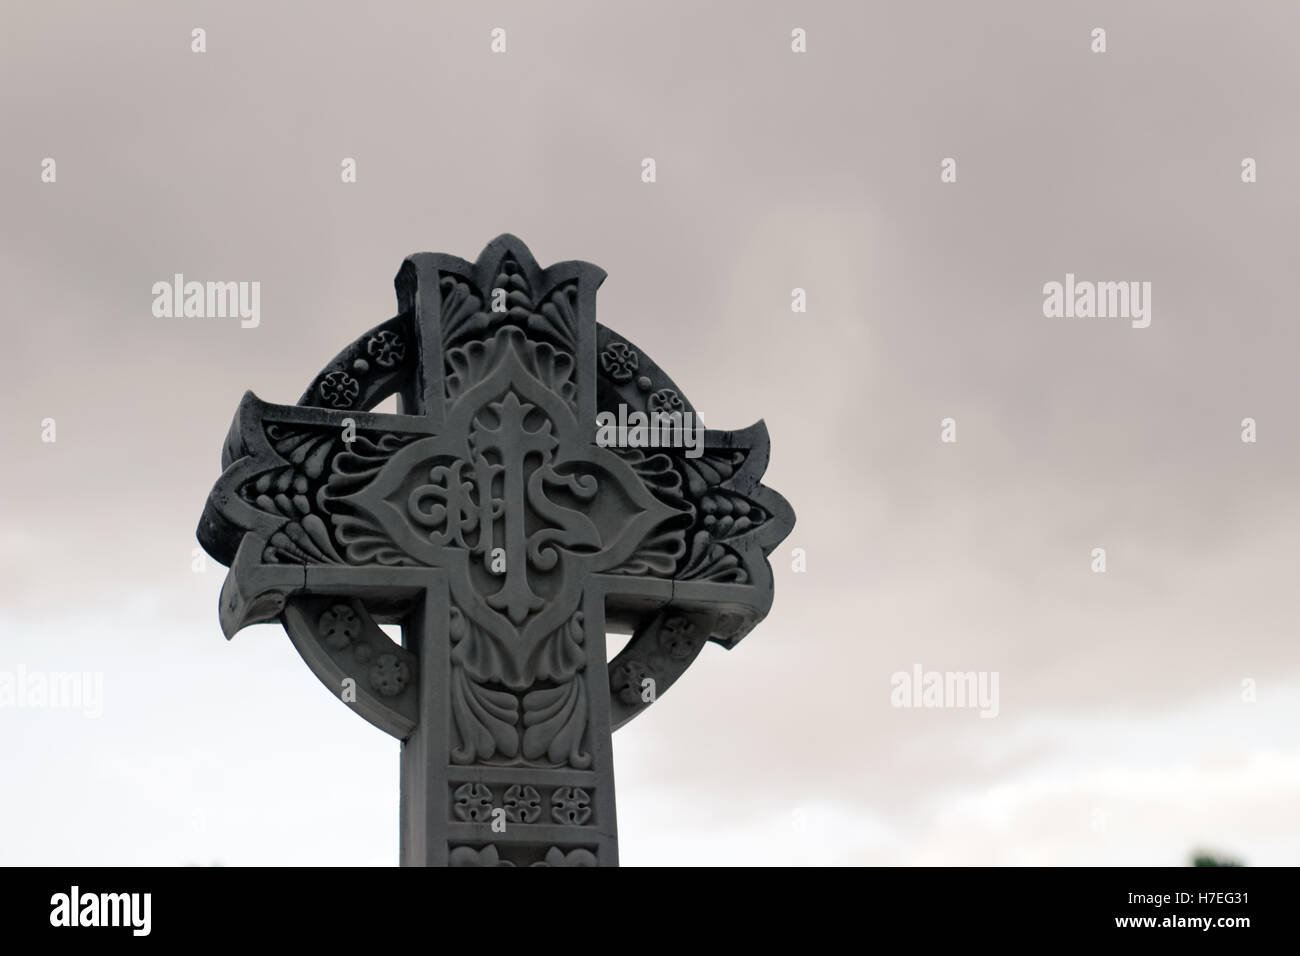 Cruz de piedra esculpida con símbolos religiosos Foto de stock